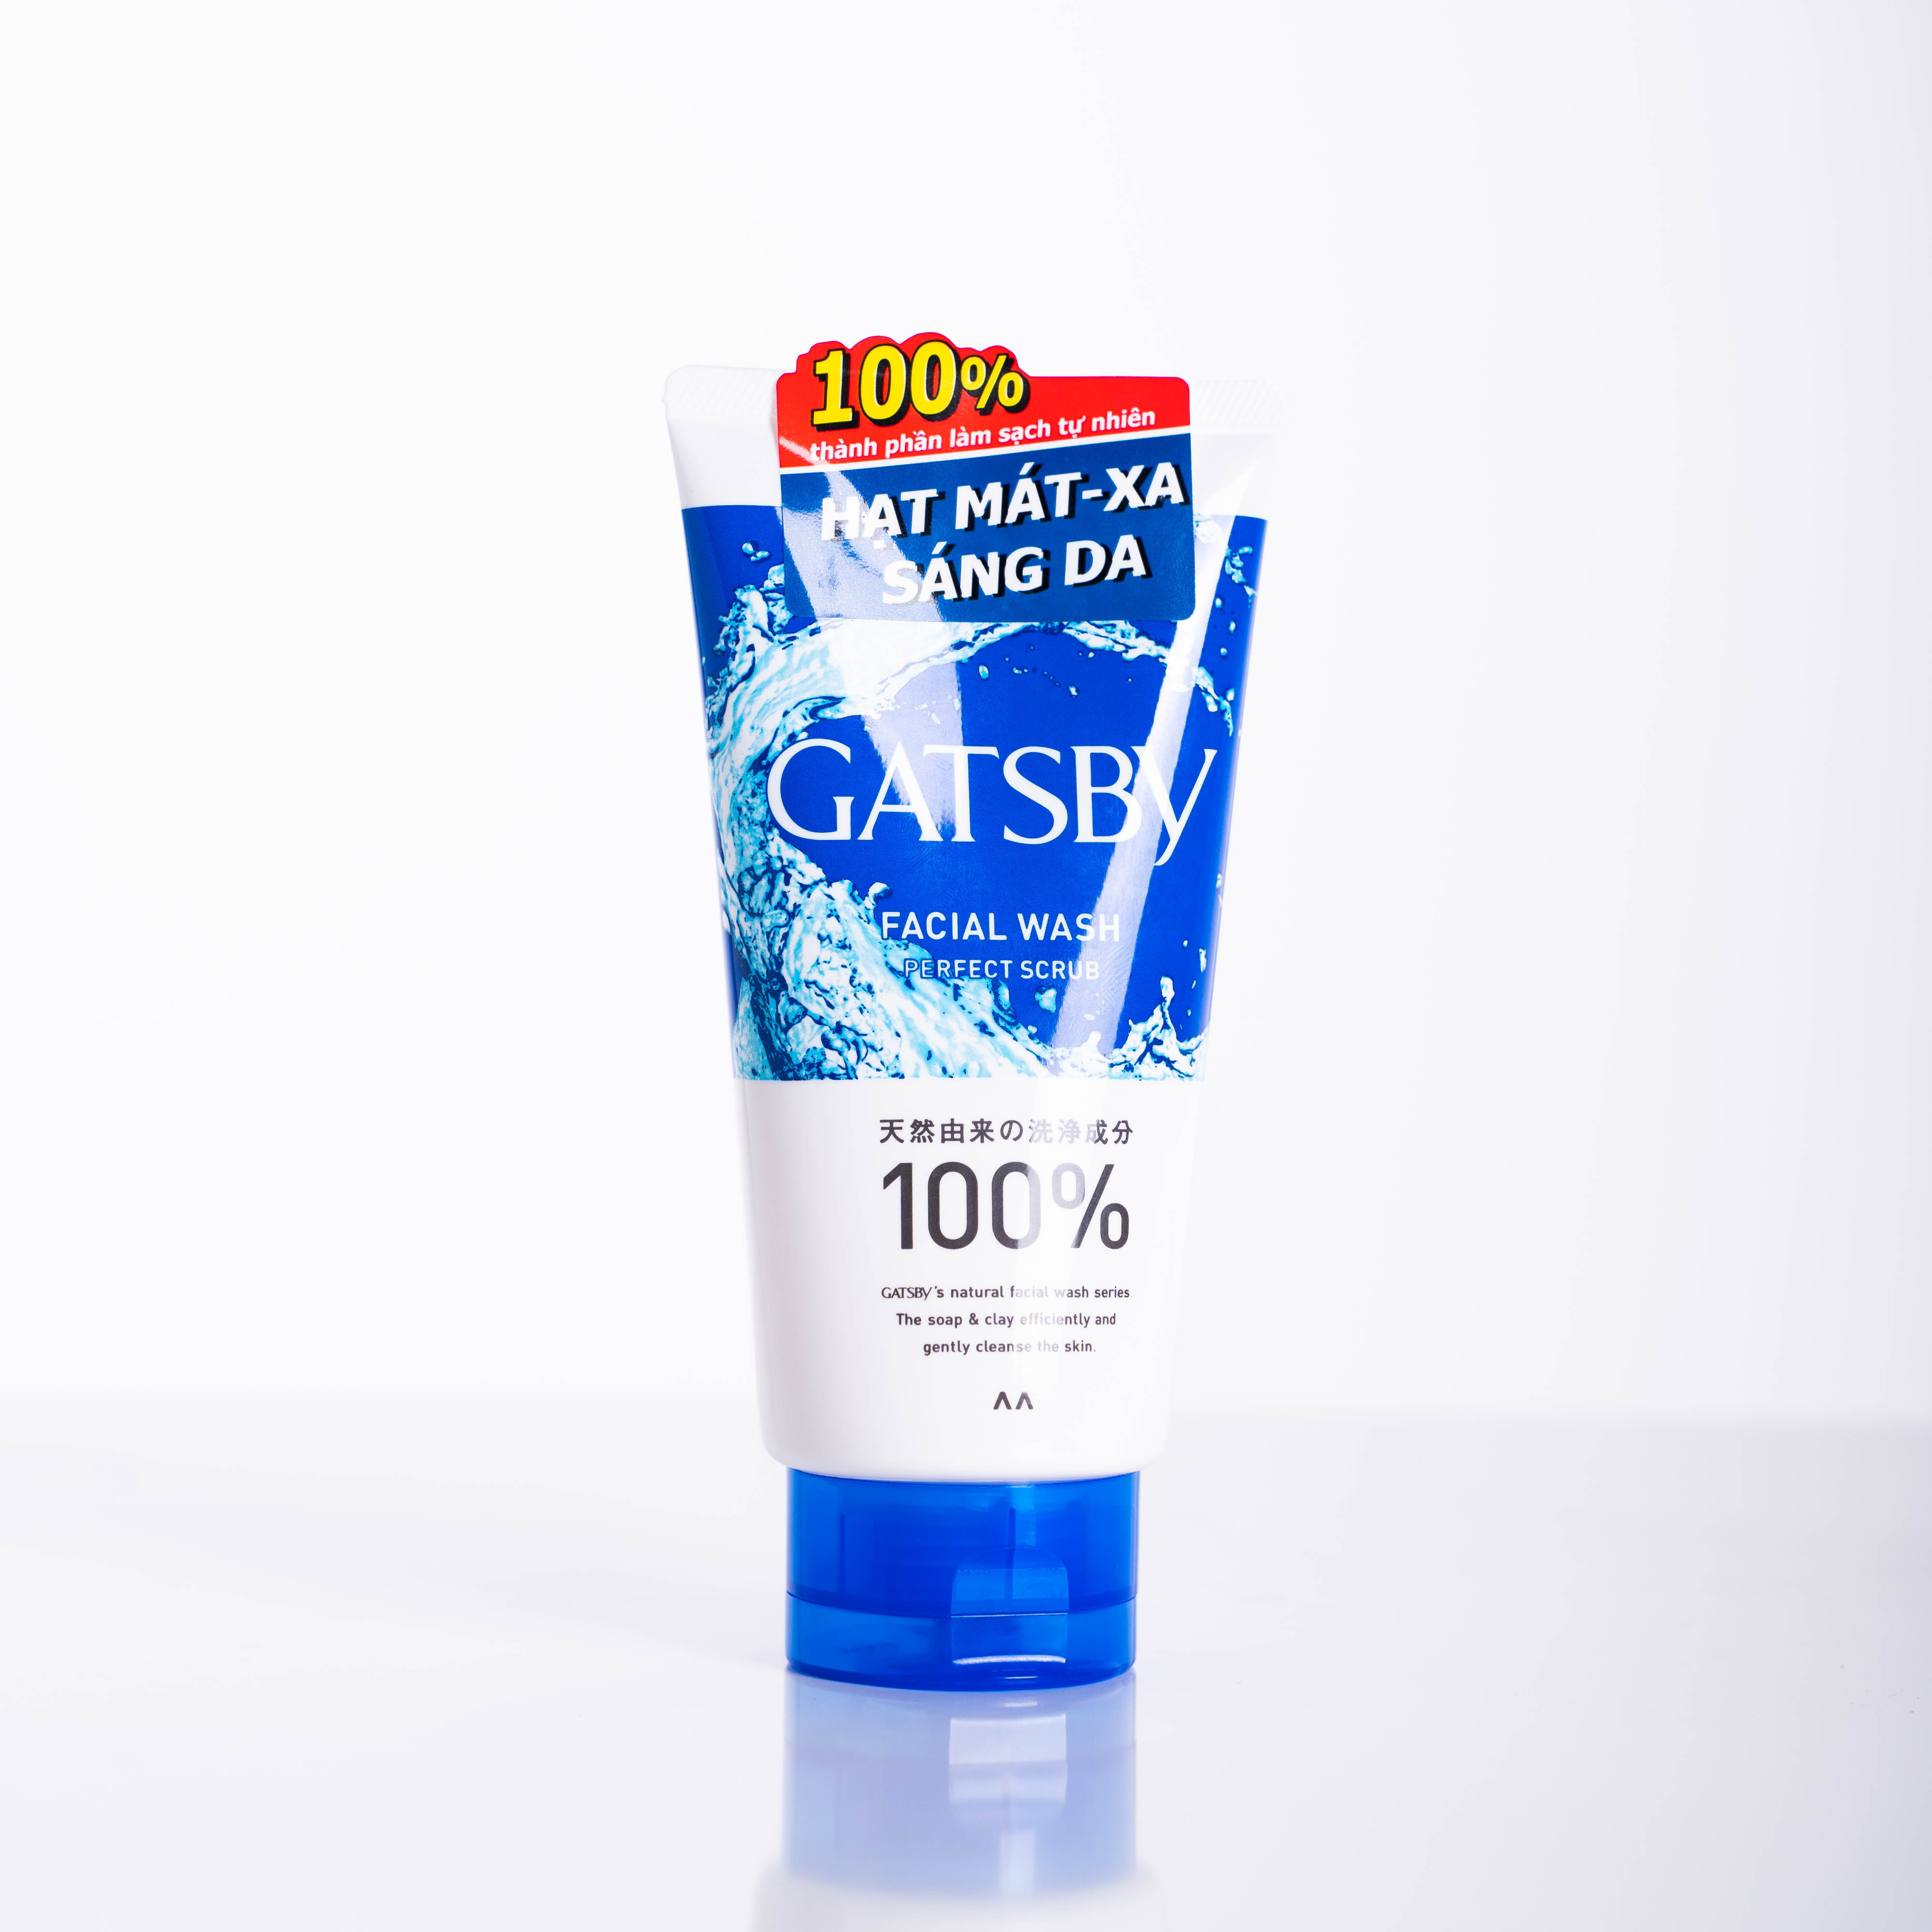 Sữa rửa mặt GATSBY Facial Wash Perfect Scrub hạt Mát-Xa sáng da & mát lạnh 130g